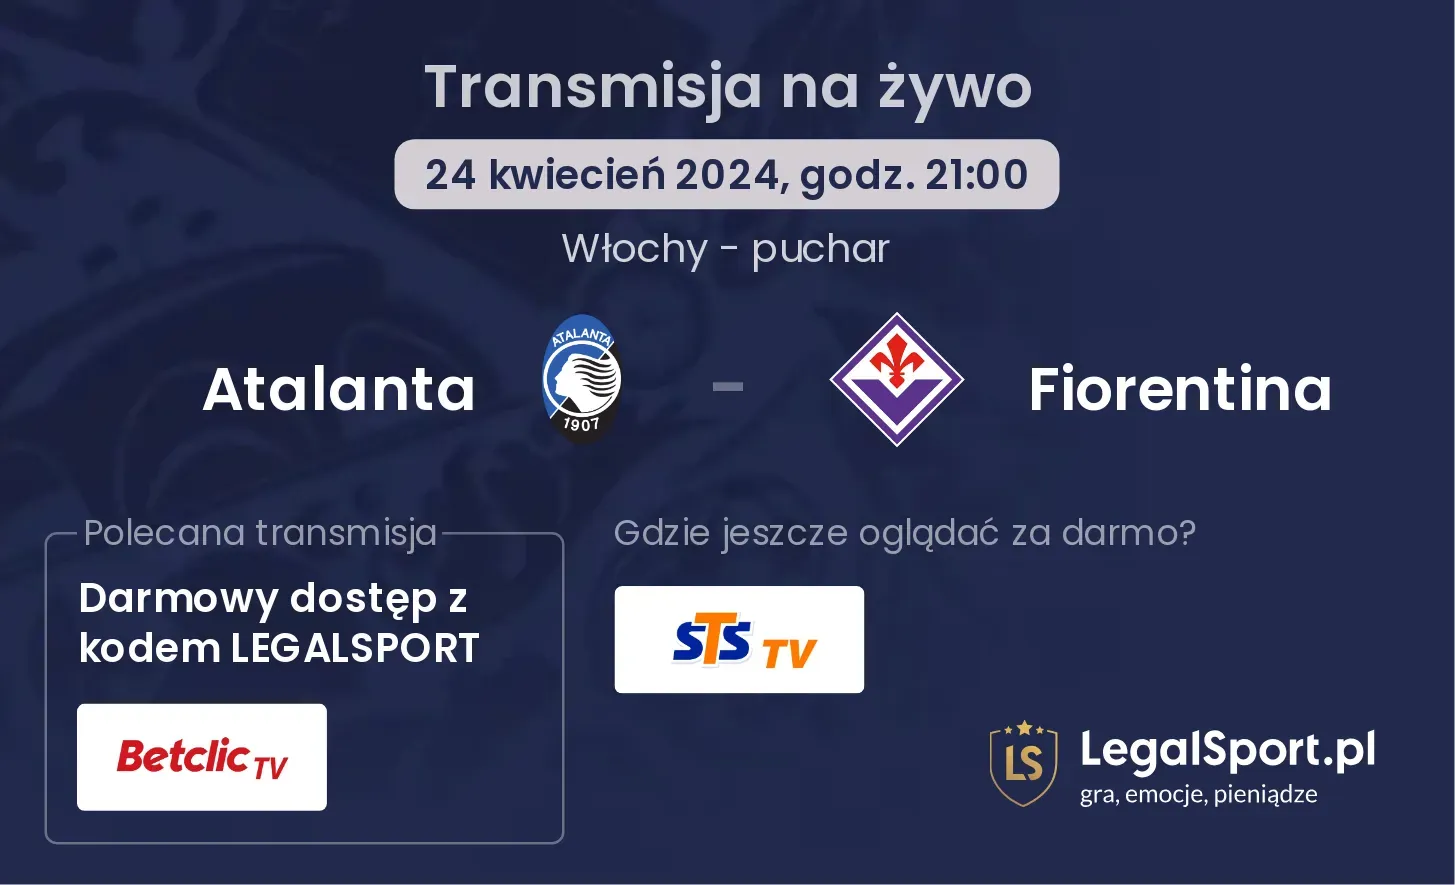 Atalanta - Fiorentina transmisja na żywo